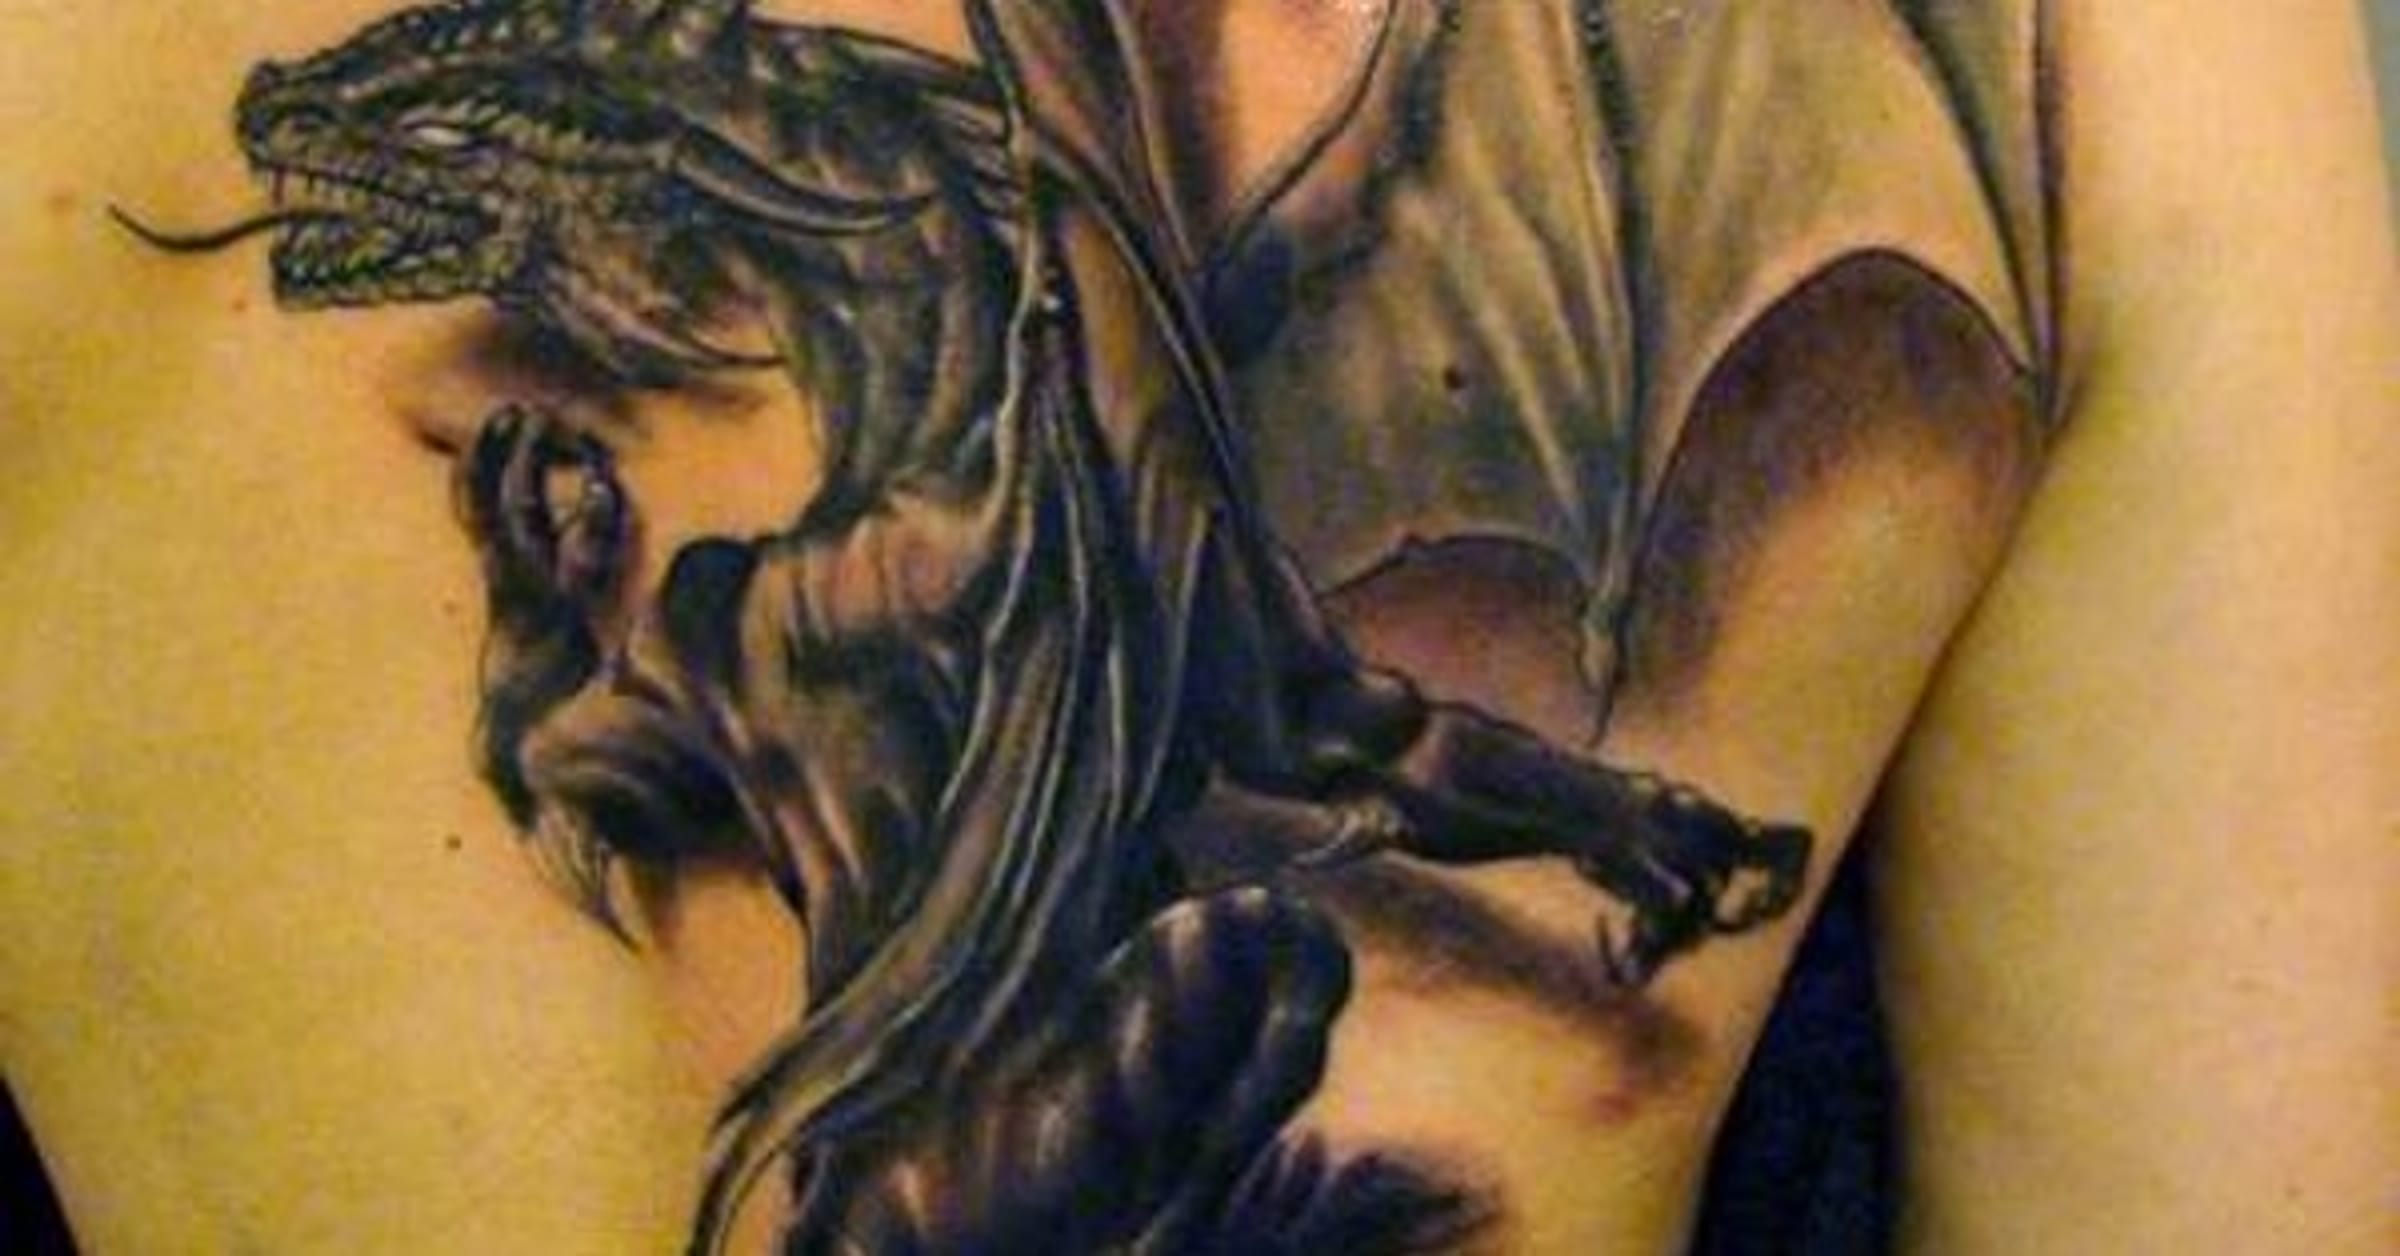 earth dragon tattoo